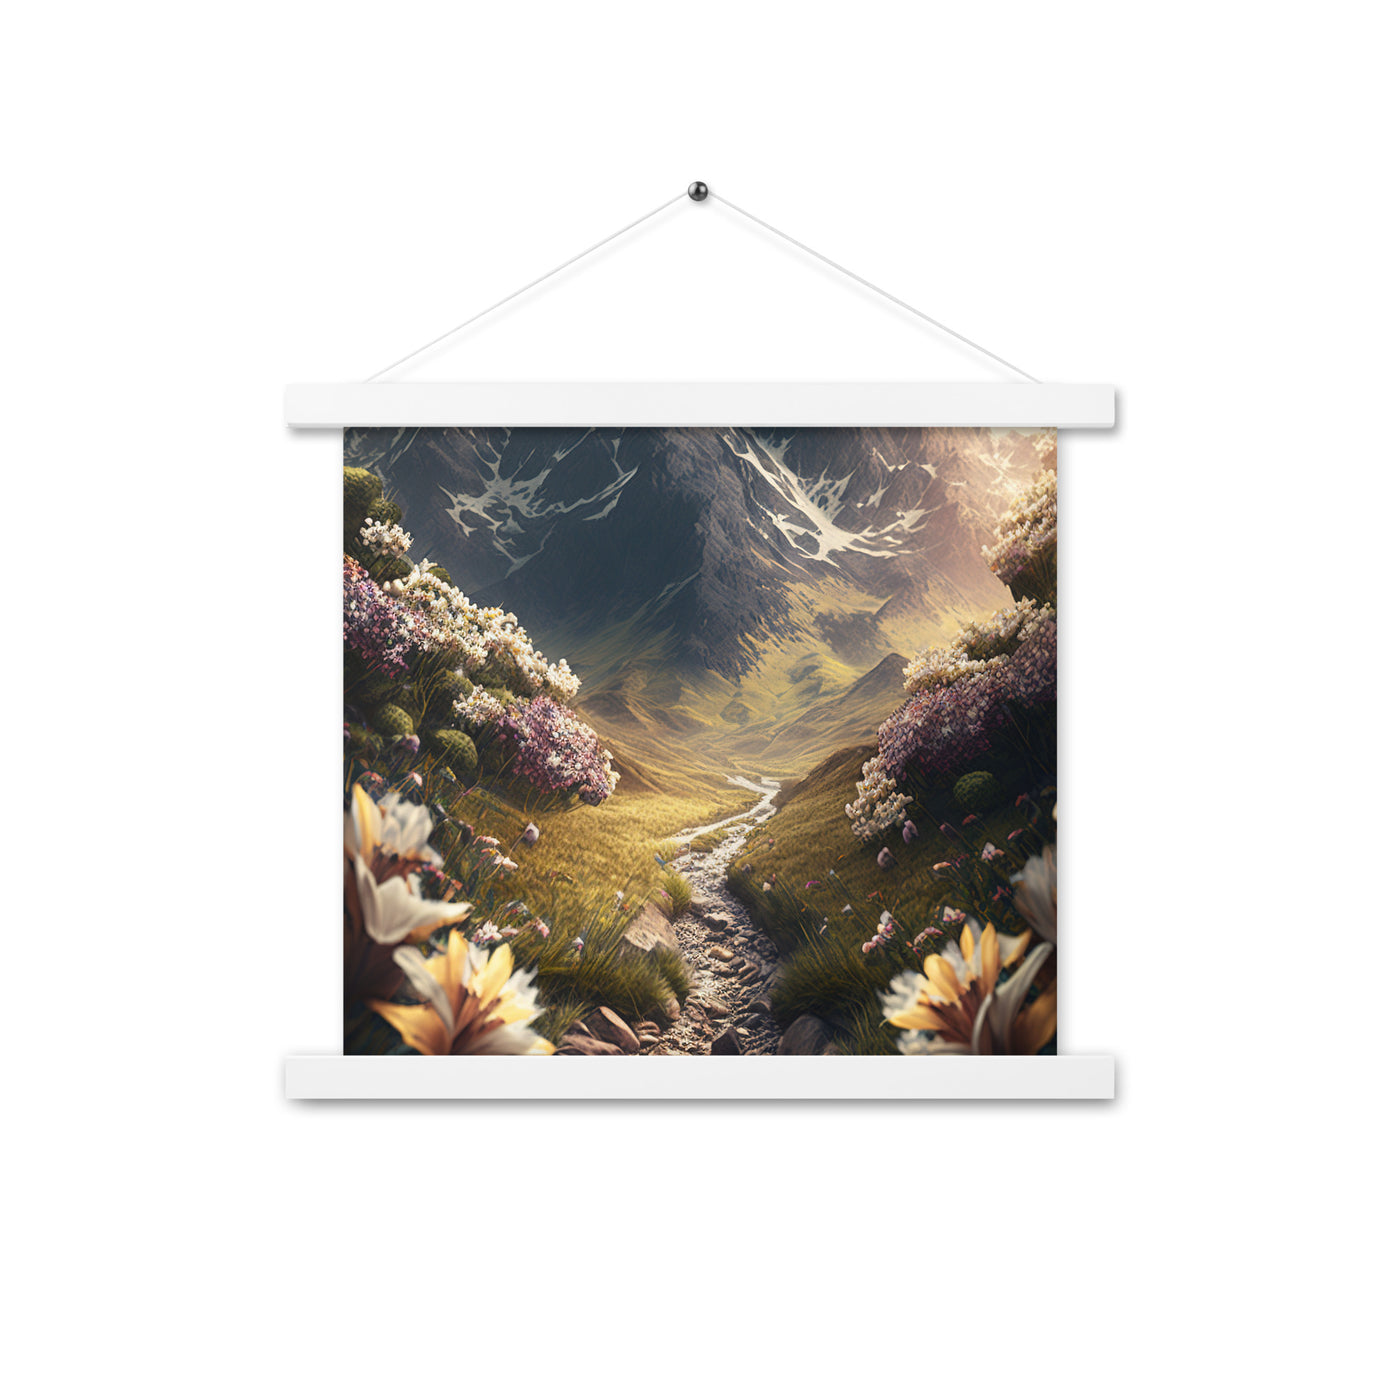 Epischer Berg, steiniger Weg und Blumen - Realistische Malerei - Premium Poster mit Aufhängung berge xxx 35.6 x 35.6 cm